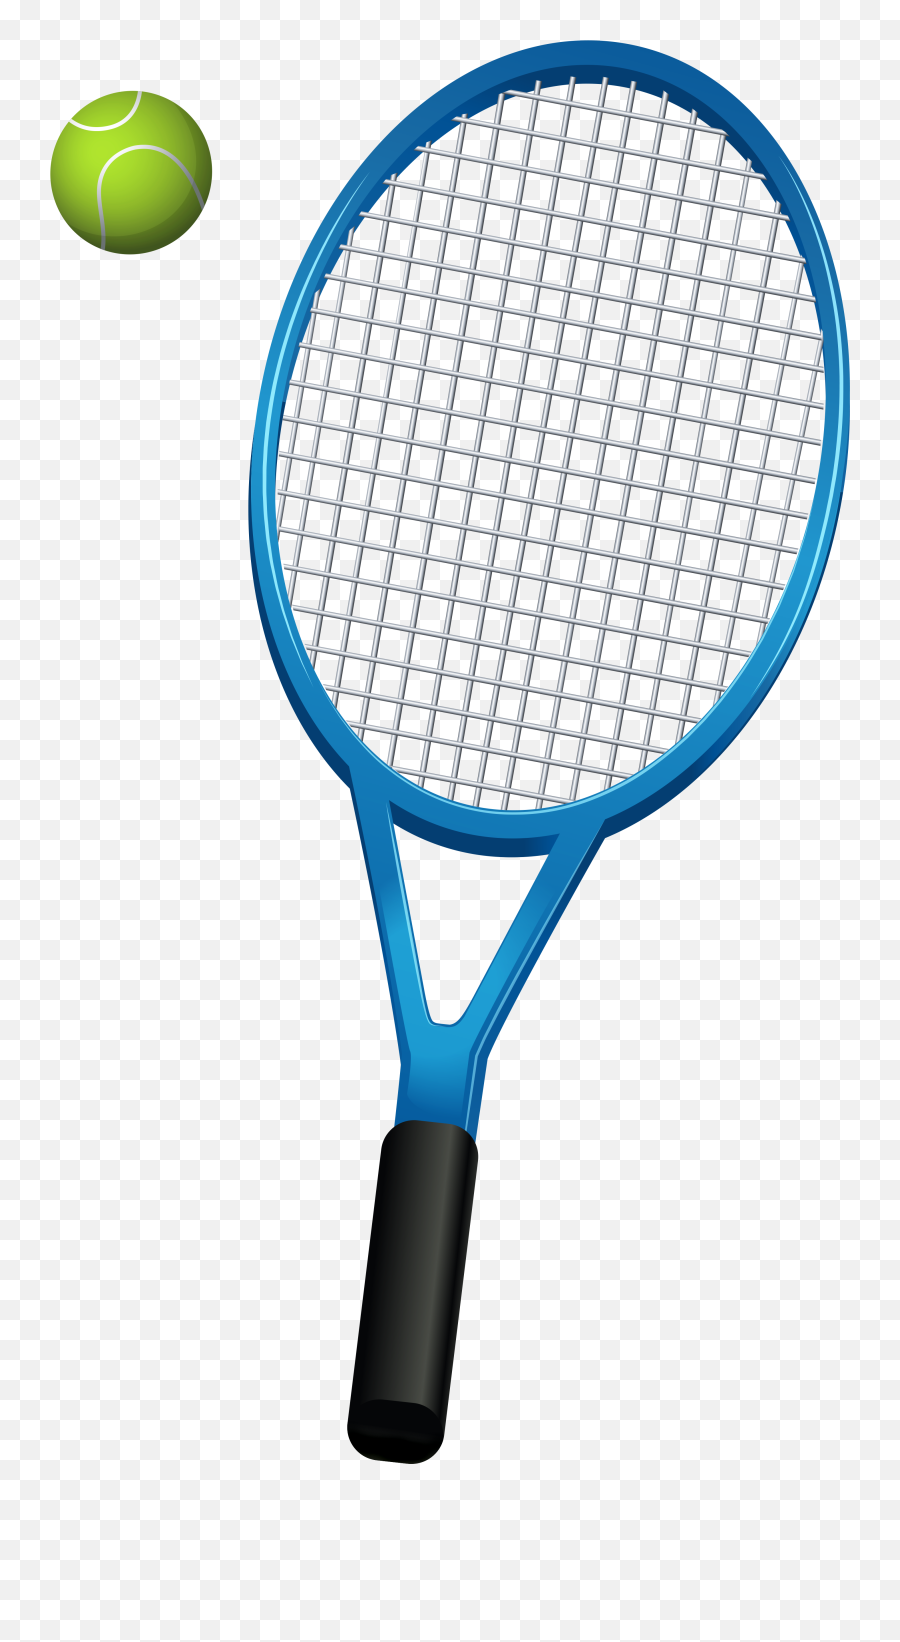 Clipart Ball Tennis - Tennis Ball And Racket Clip Art Png,Tennis Ball Png